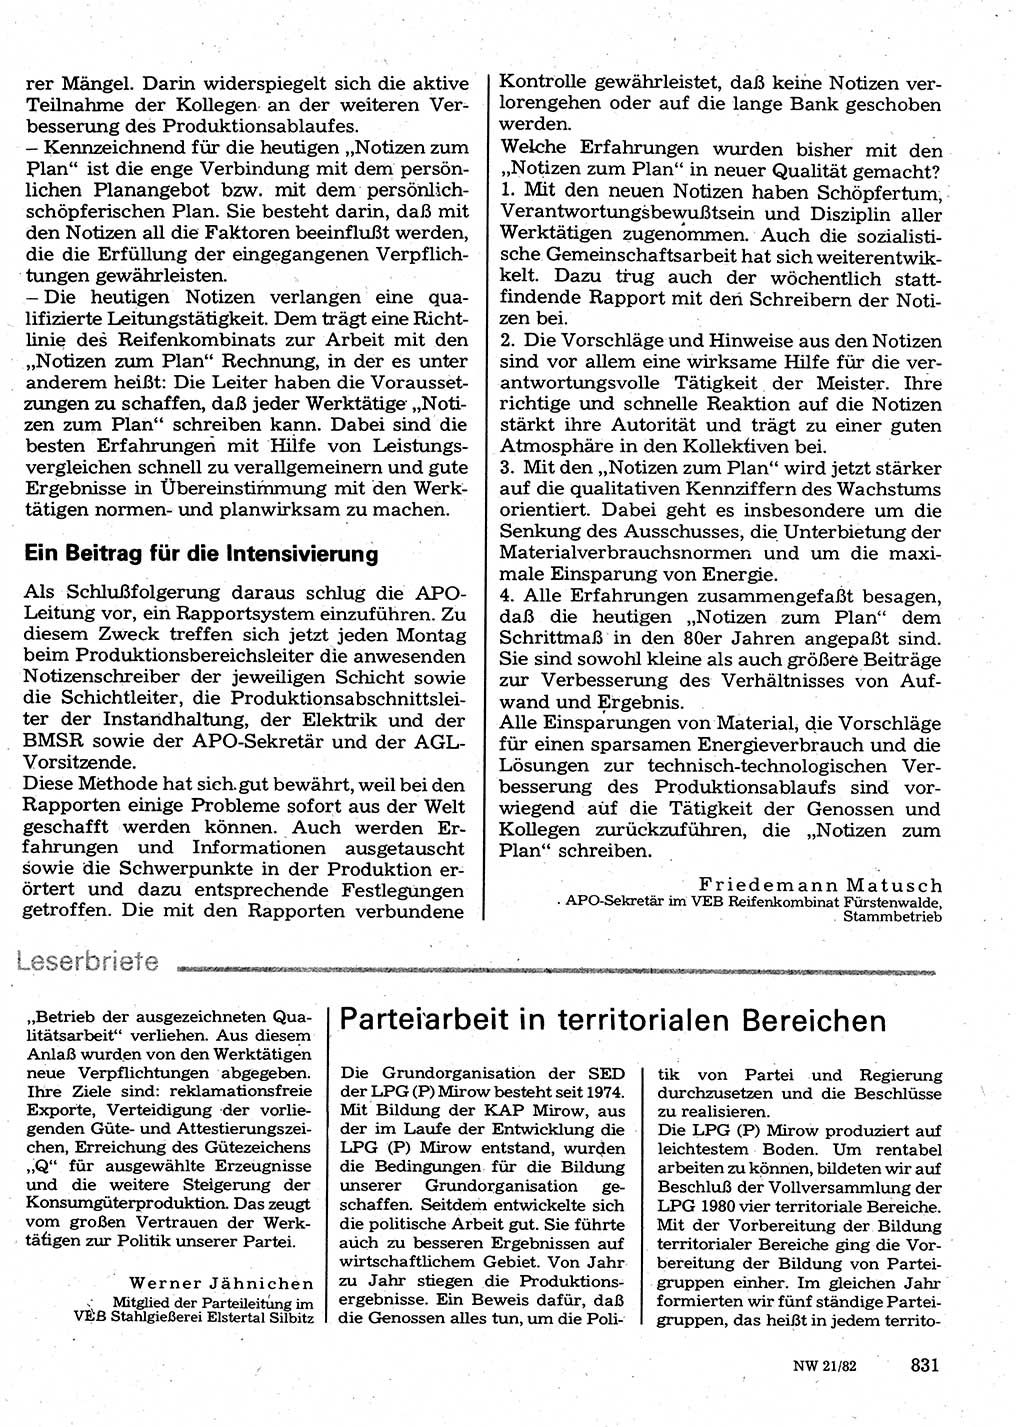 Neuer Weg (NW), Organ des Zentralkomitees (ZK) der SED (Sozialistische Einheitspartei Deutschlands) für Fragen des Parteilebens, 37. Jahrgang [Deutsche Demokratische Republik (DDR)] 1982, Seite 831 (NW ZK SED DDR 1982, S. 831)